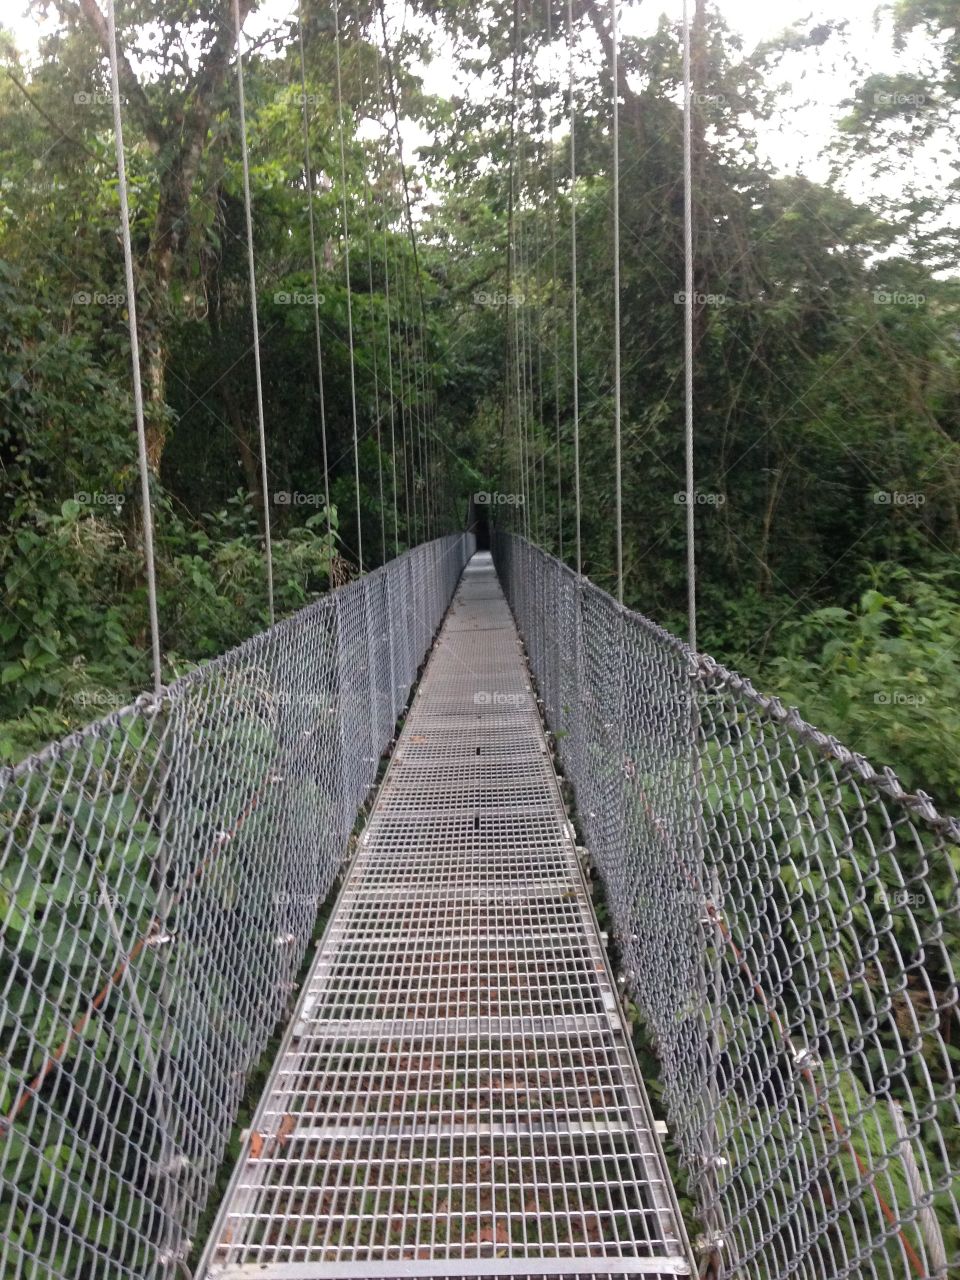 Hanging Bridge in Costa Rica 